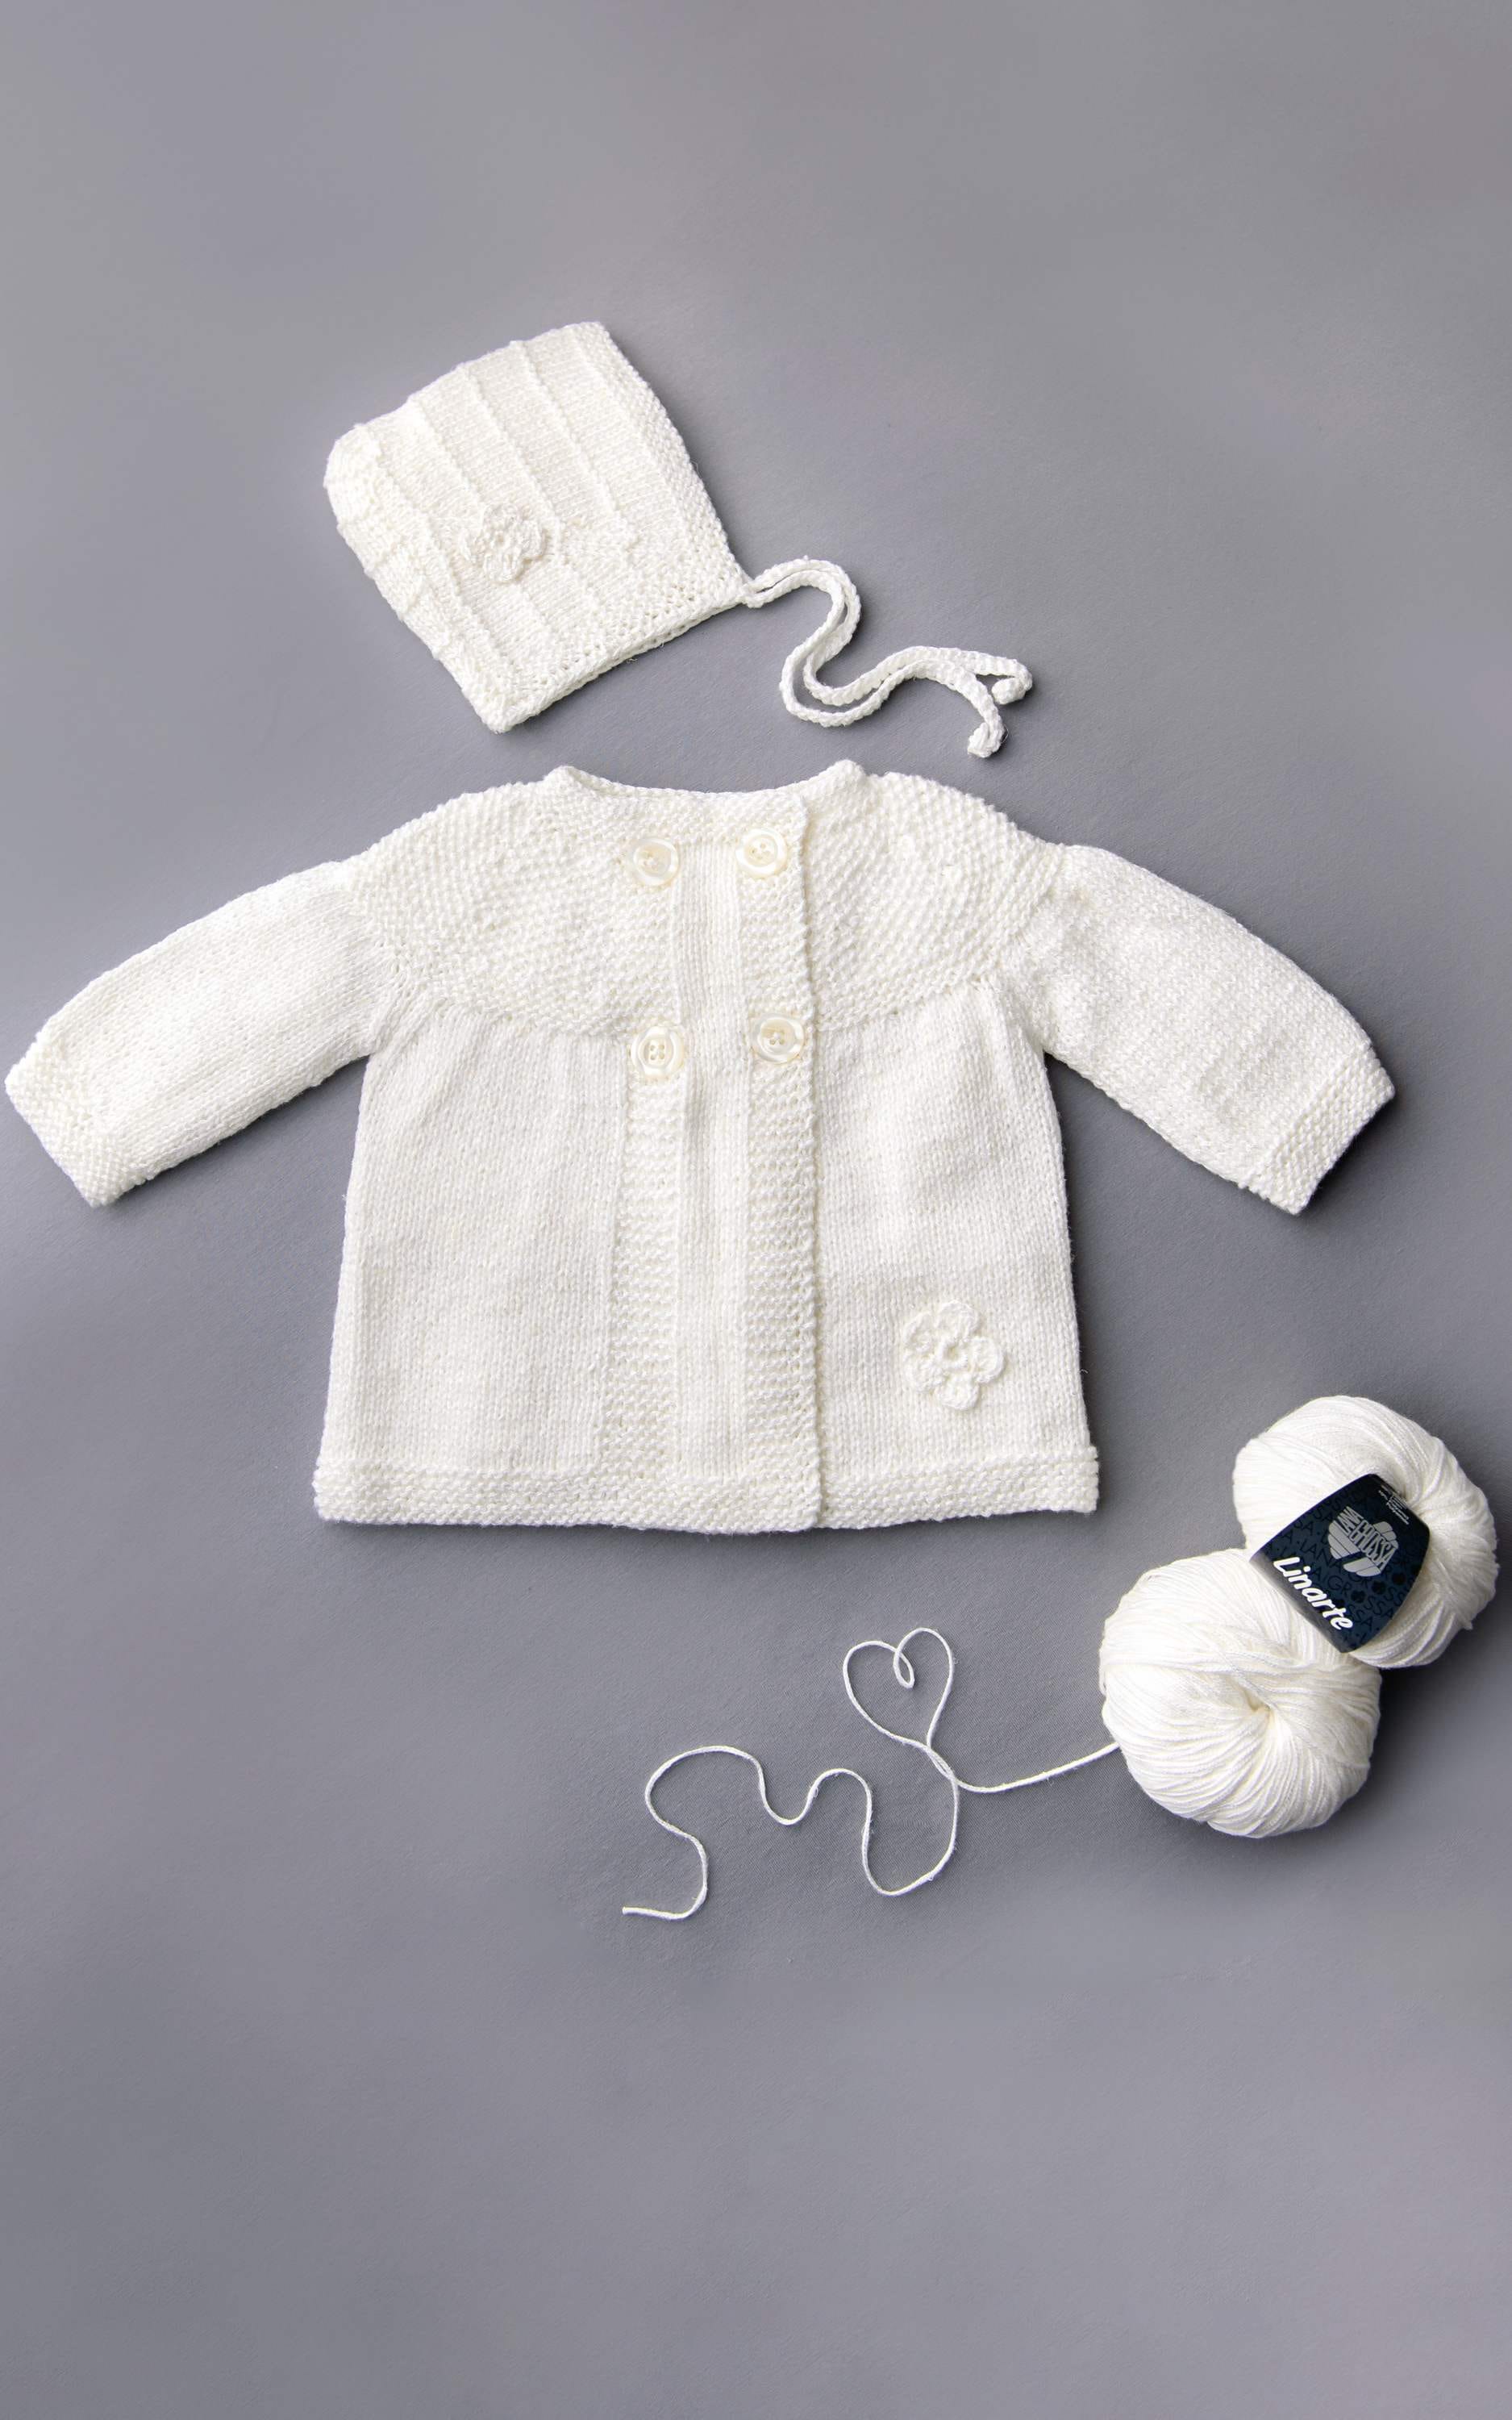 LANA GROSSA Strickset Baby Mantel mit Perlmuster und Häkelblümchen - Strickset